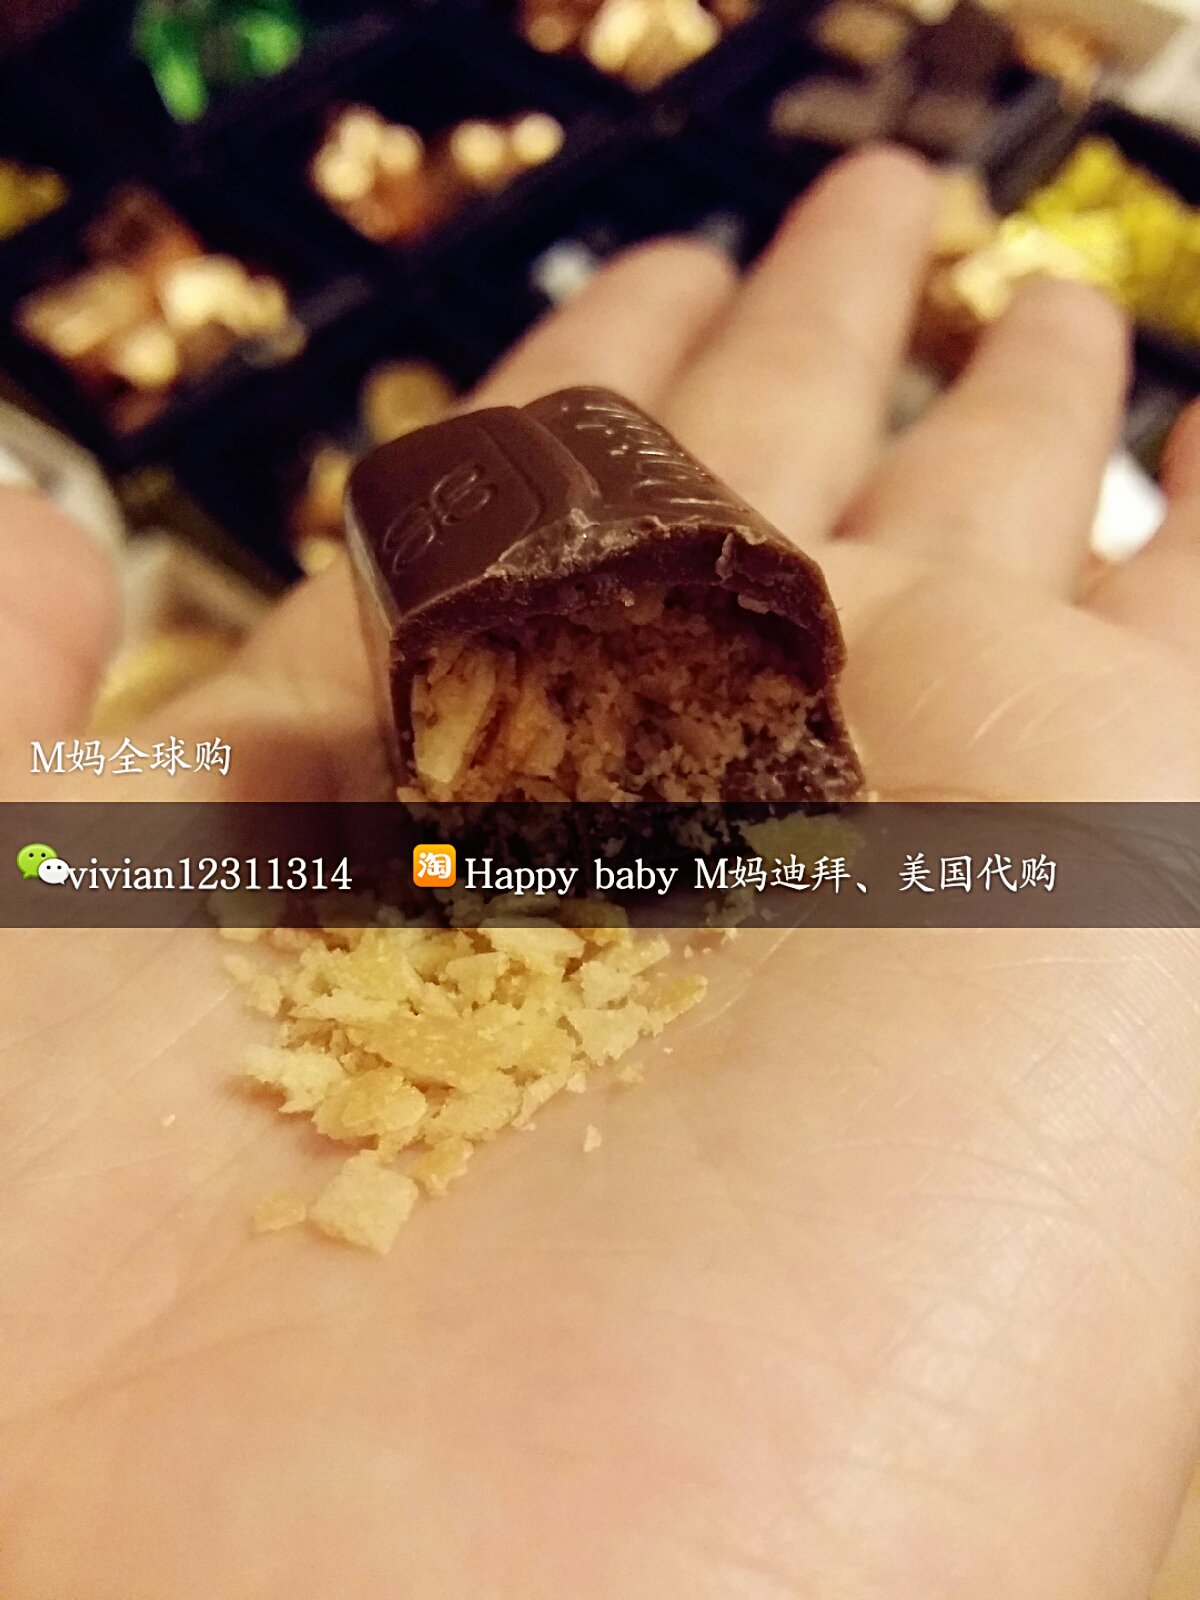 【10月】M妈迪拜购Patchi巧克力豪华碎饼干夹心巧克力 250克